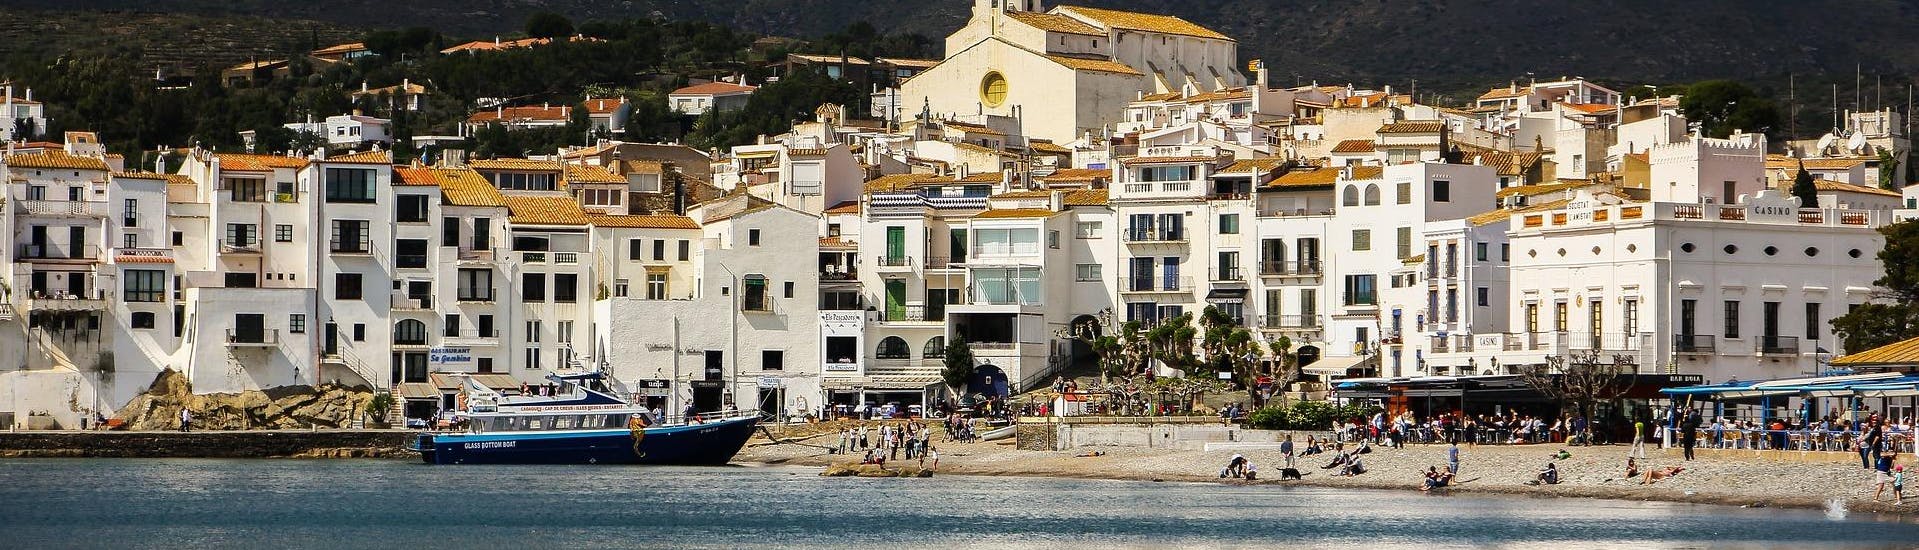 Vue de la côte lors d'une excursion en bateau à Cadaqués.